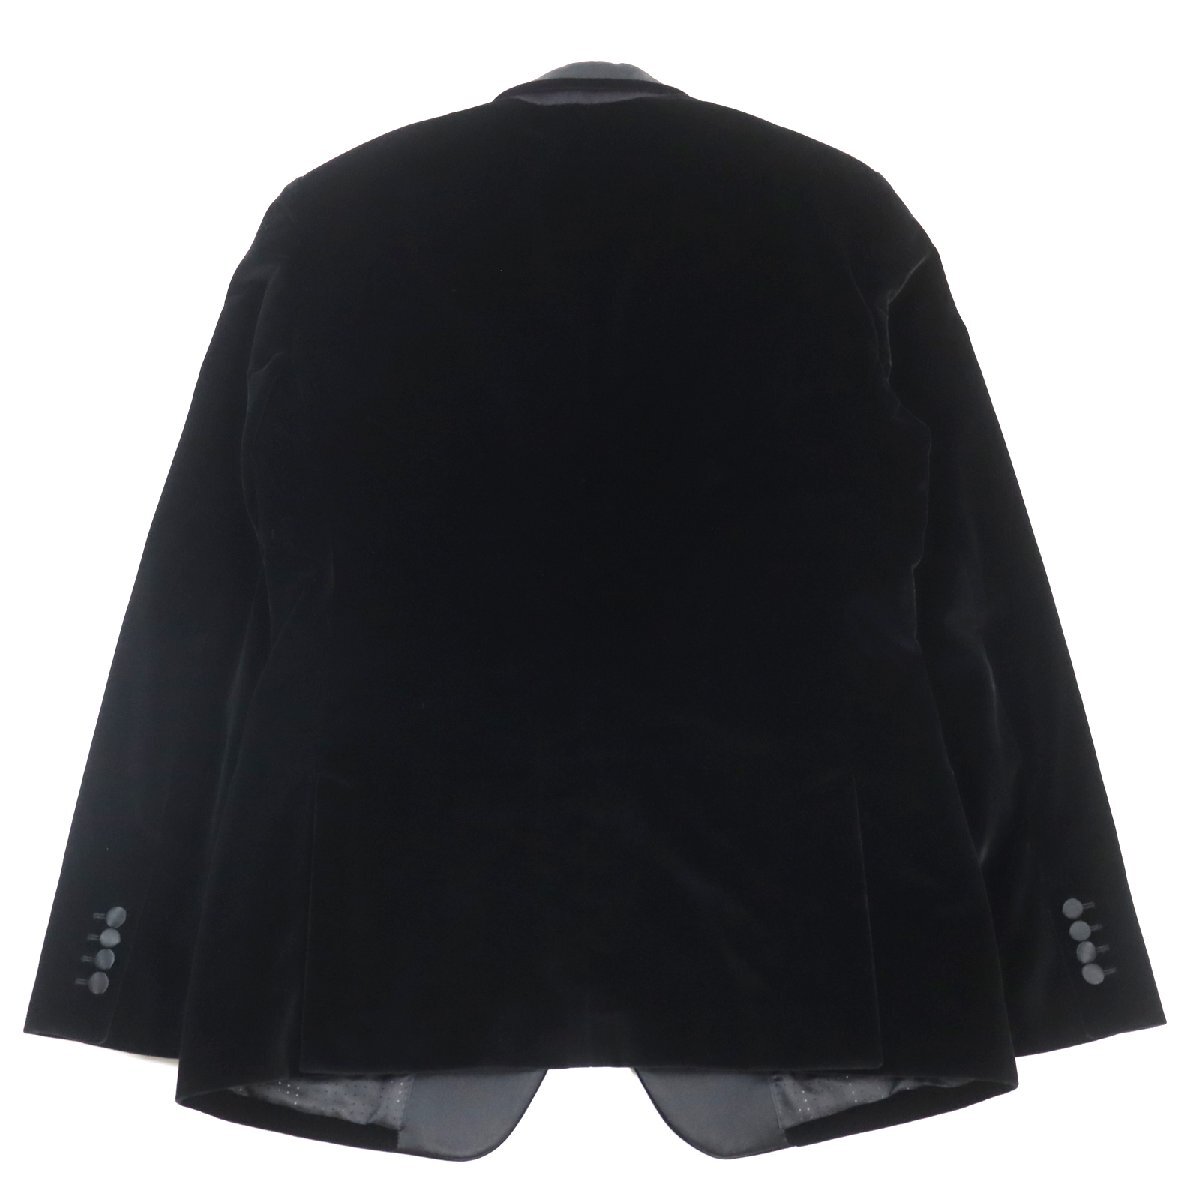  прекрасный товар 0 Dolce & Gabbana TAORMINA SICILIA линия шелк . чёрный бирка велюр одиночный tailored jacket чёрный 52 сделано в Италии стандартный товар мужской 